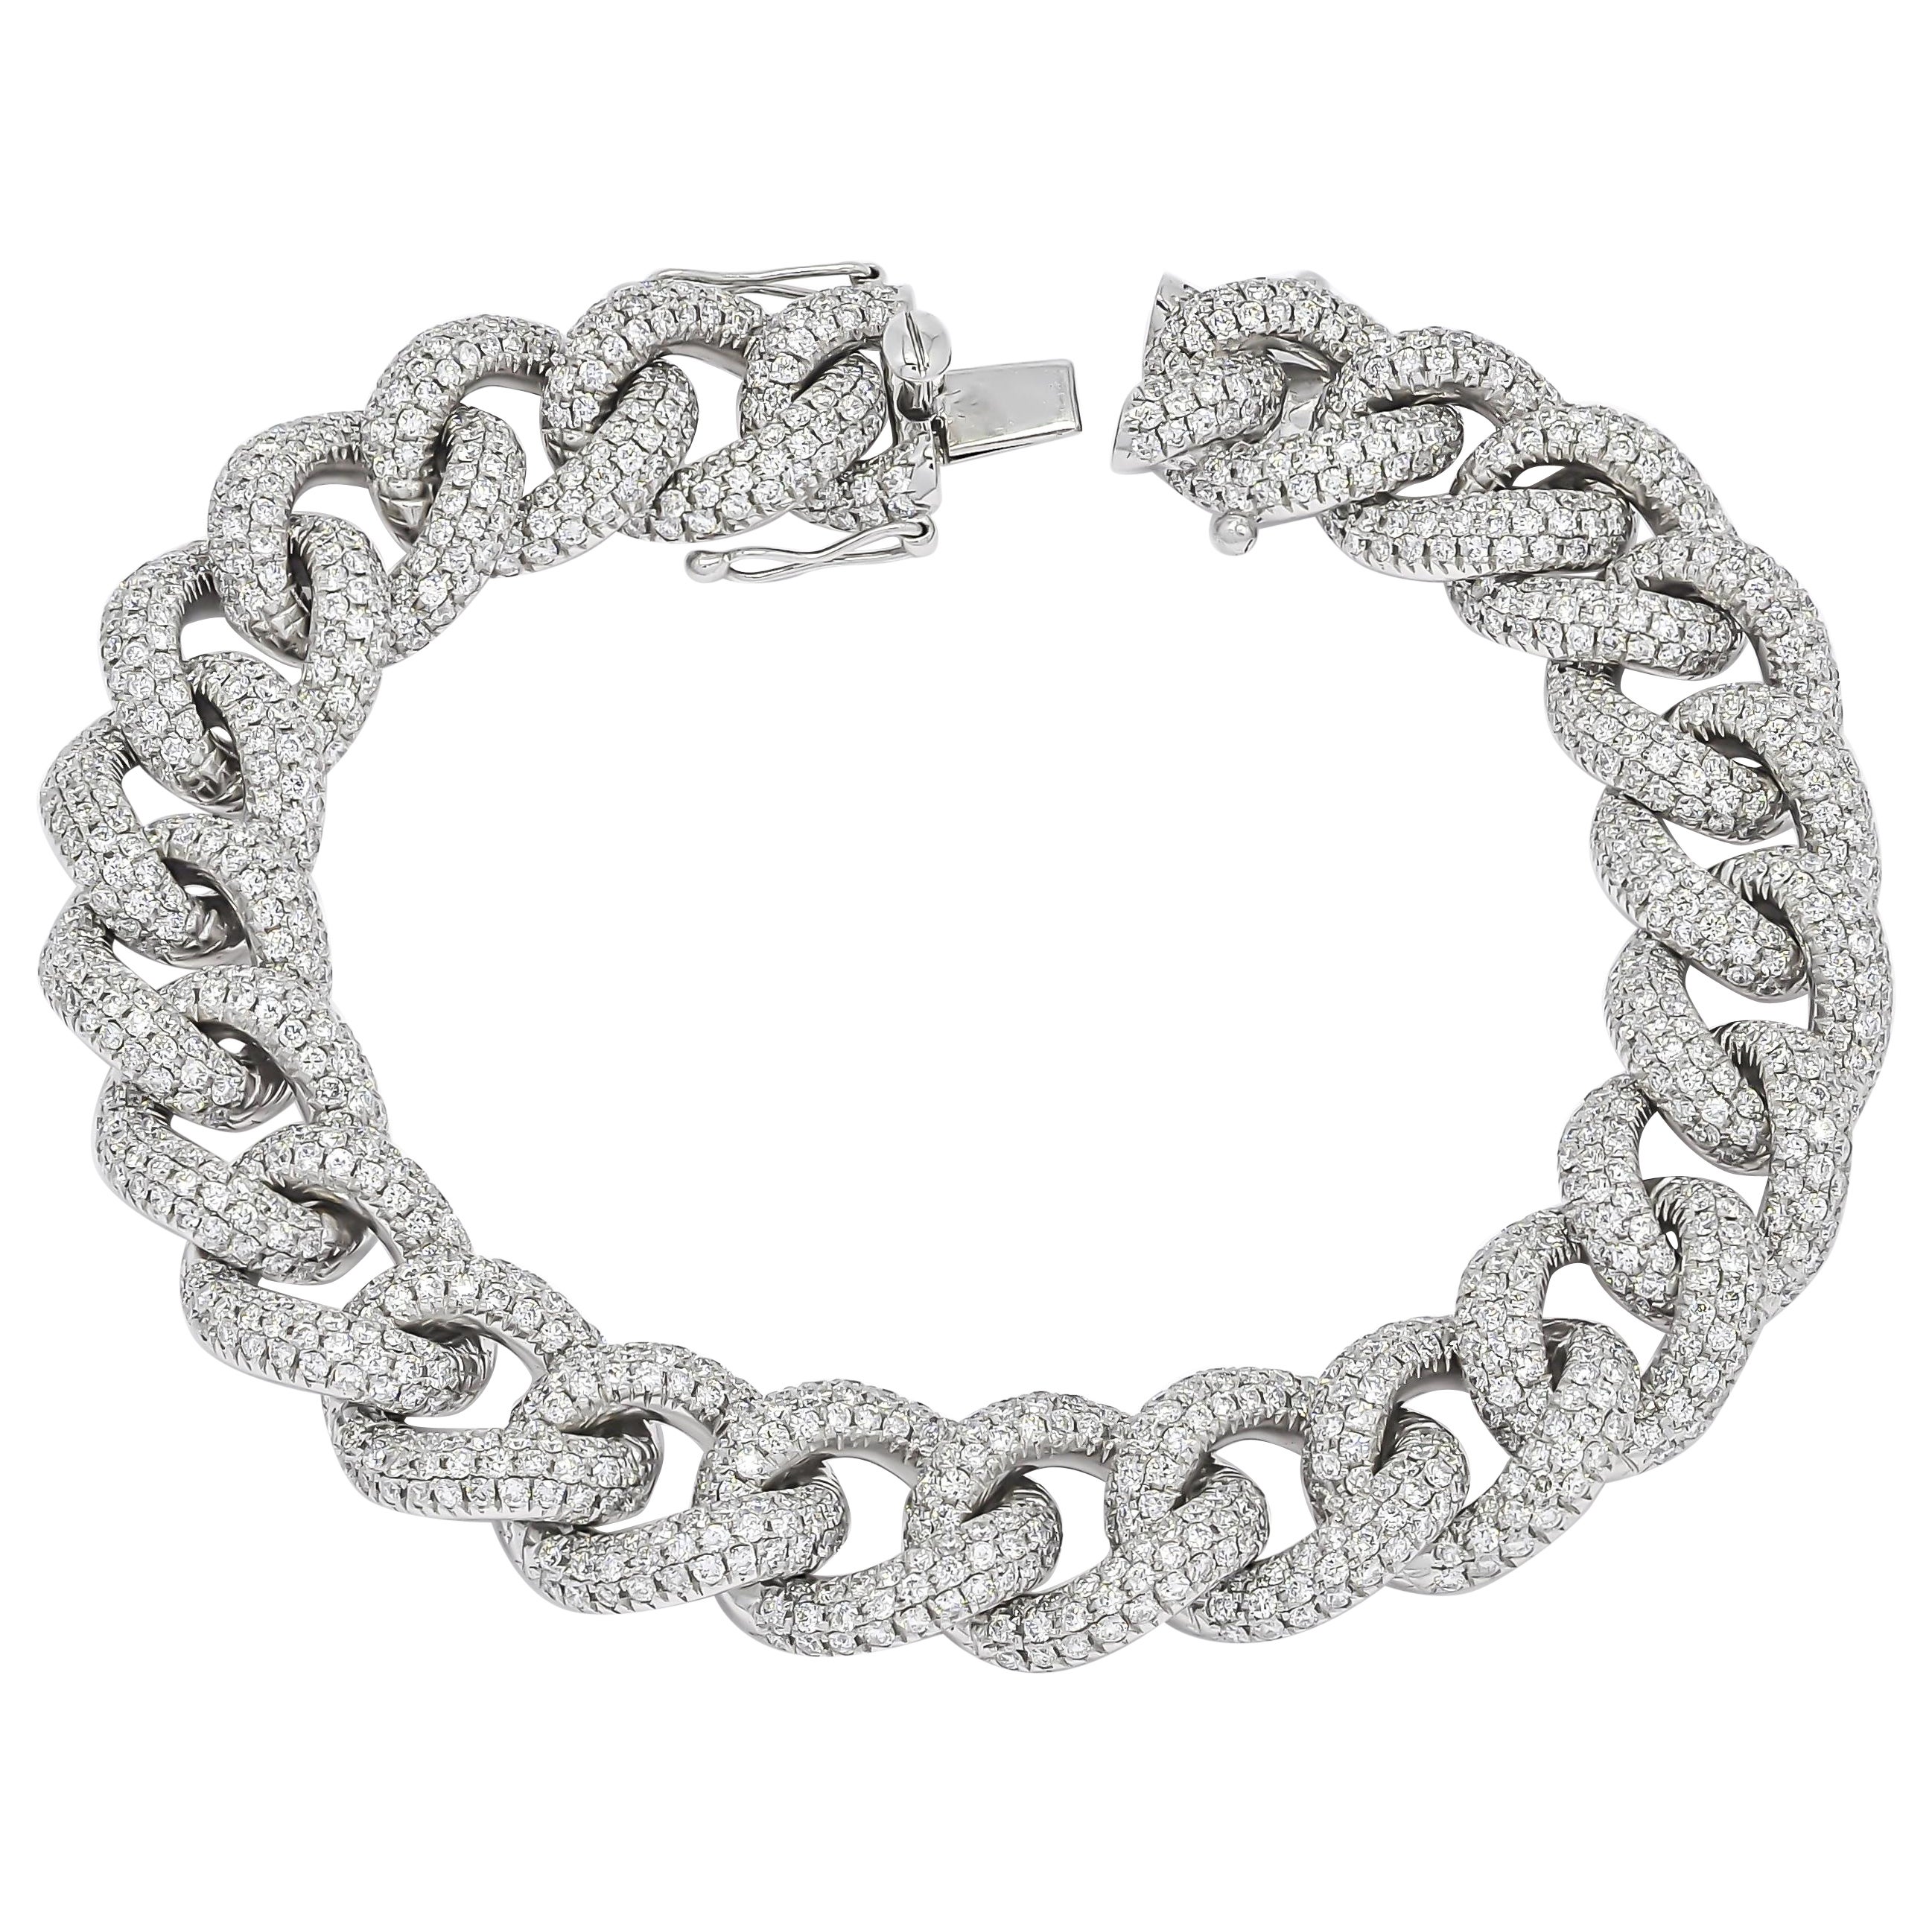 Bracelet tennis d'homme et femme cubain en or blanc 18 carats avec diamants naturels pavés et maillons courbes 